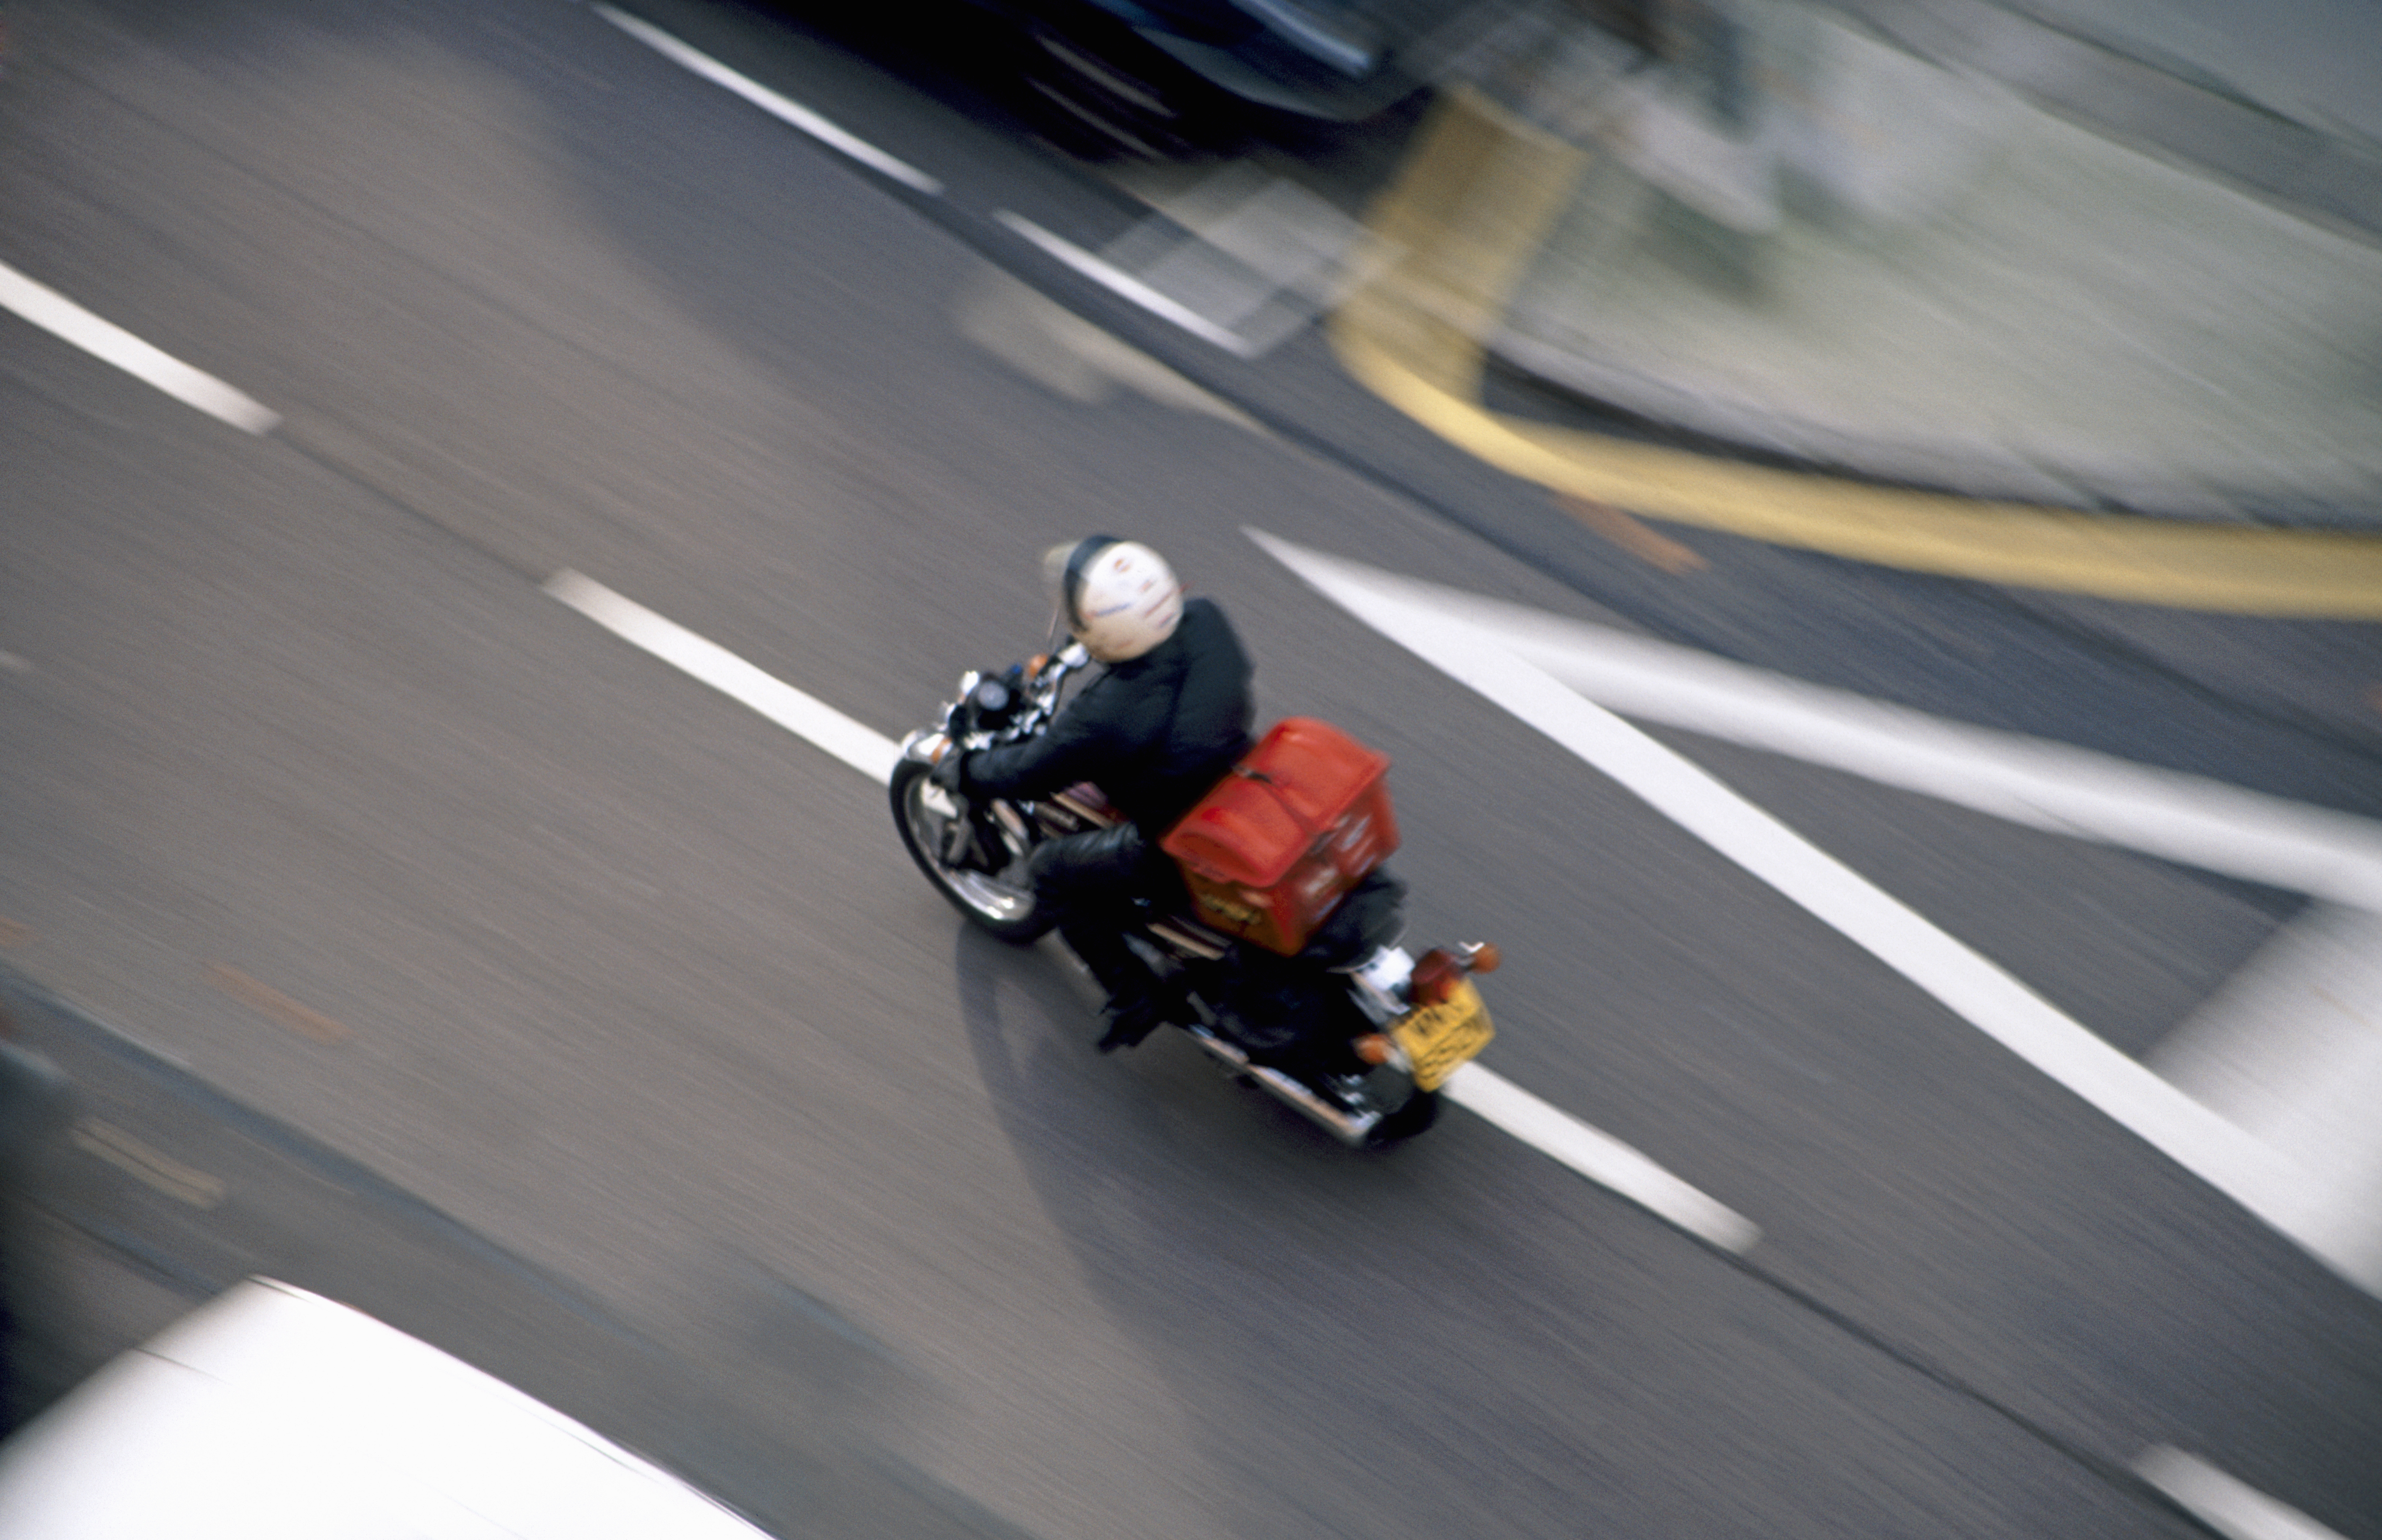 تصویری از پیک موتورسیکلت که با سرعت از خیابان عبور می کند.